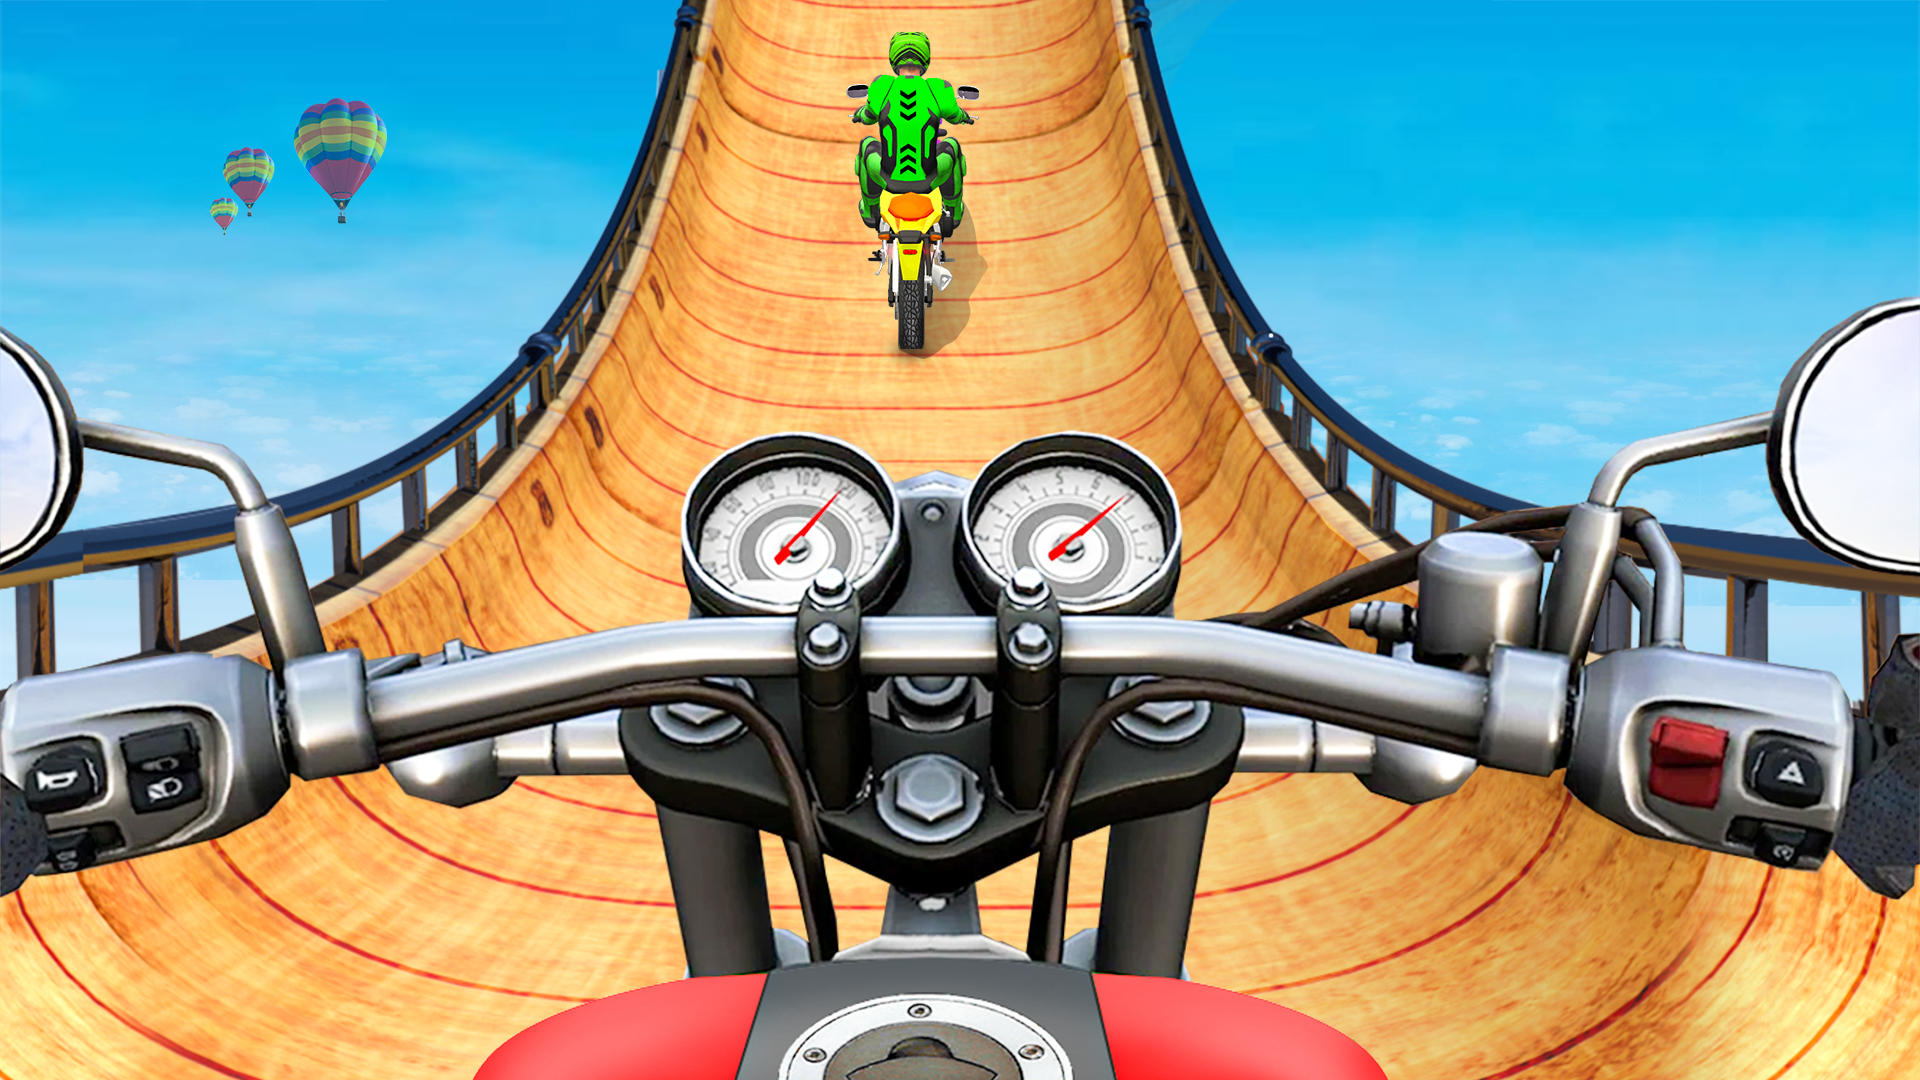 Screenshot 1 of acrobacia juegos de motos 3D 1.0.35